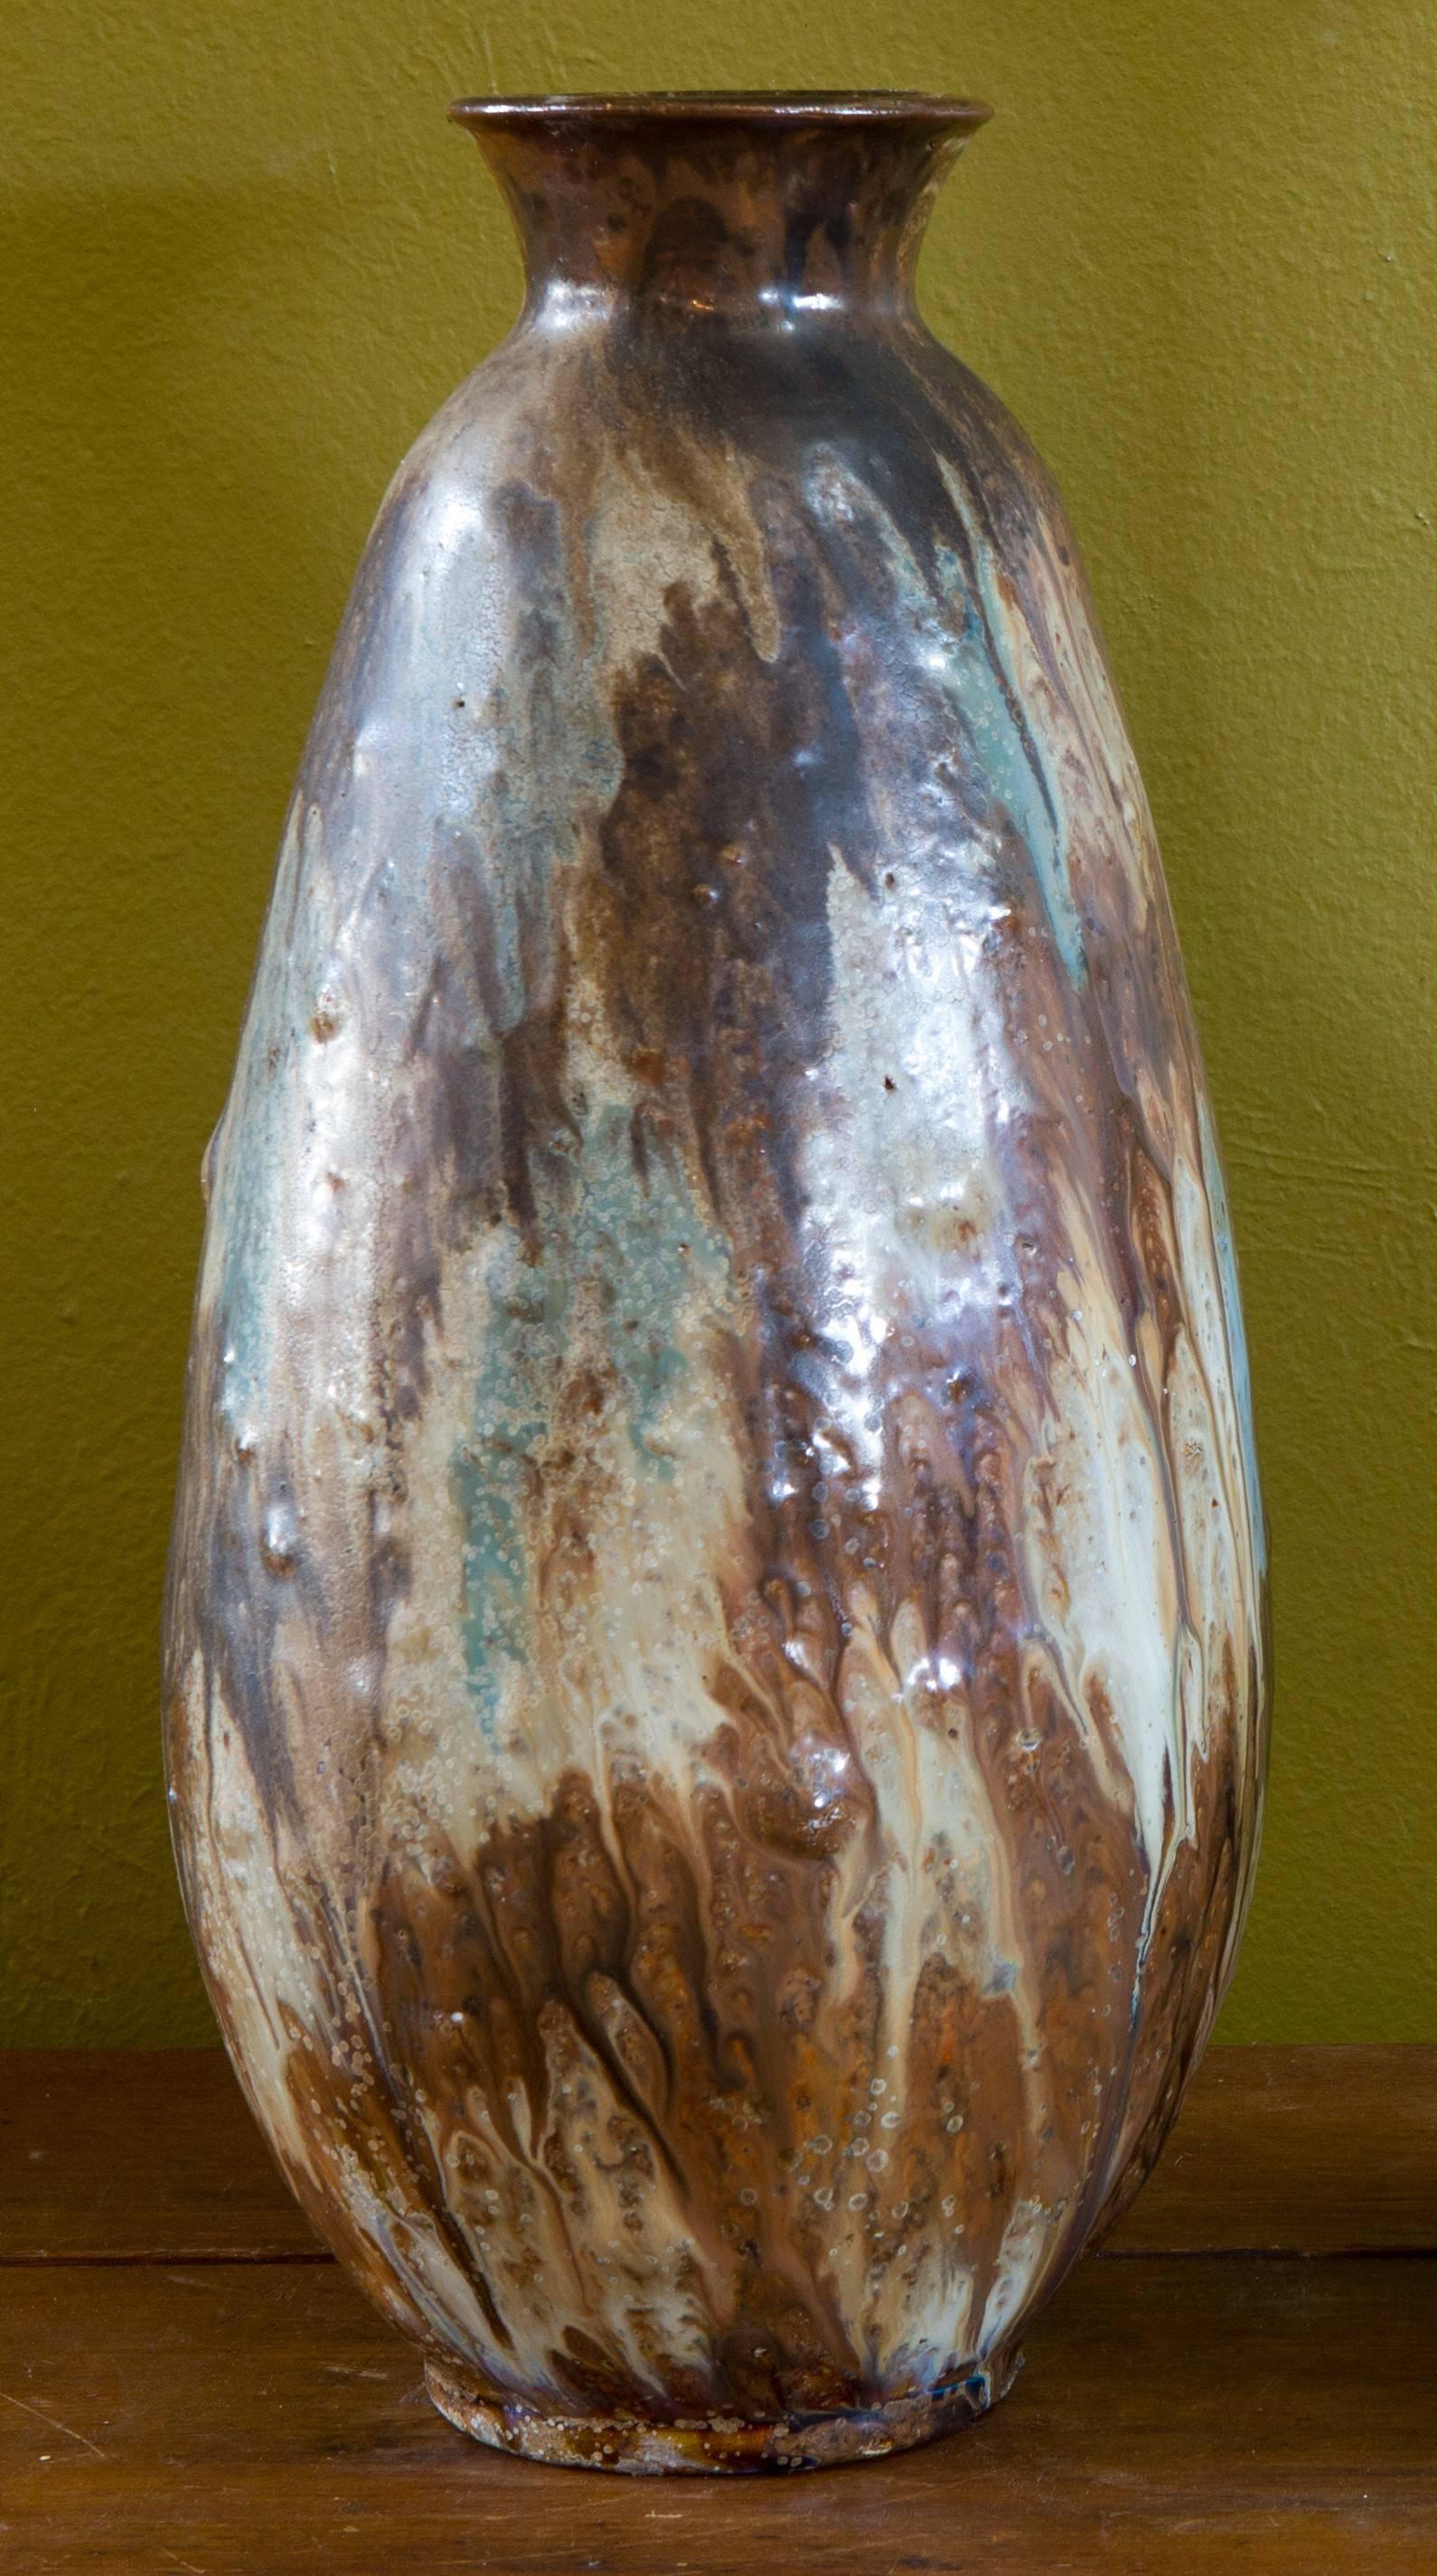 Wonderful handmade glazed pottery vase by Edgard Aubry of Bouffioulx, Belgium. Hand-signed 